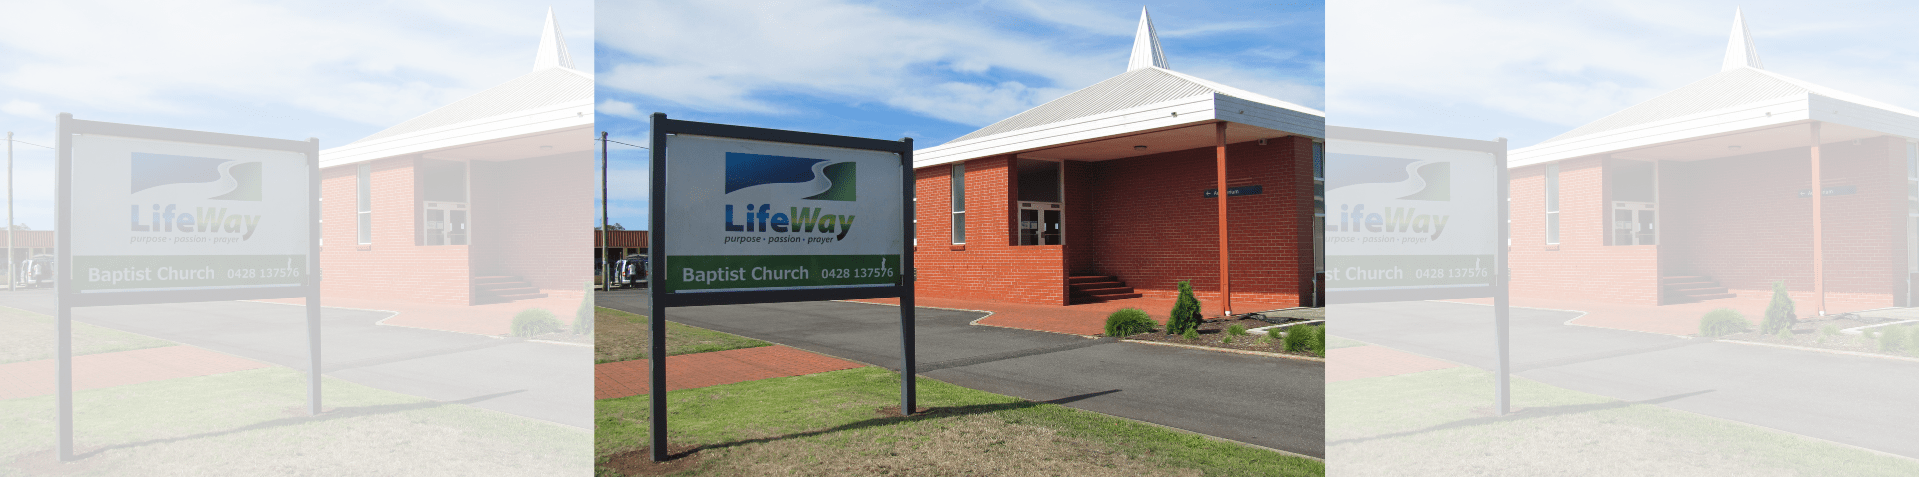 LifeWay Baptist church